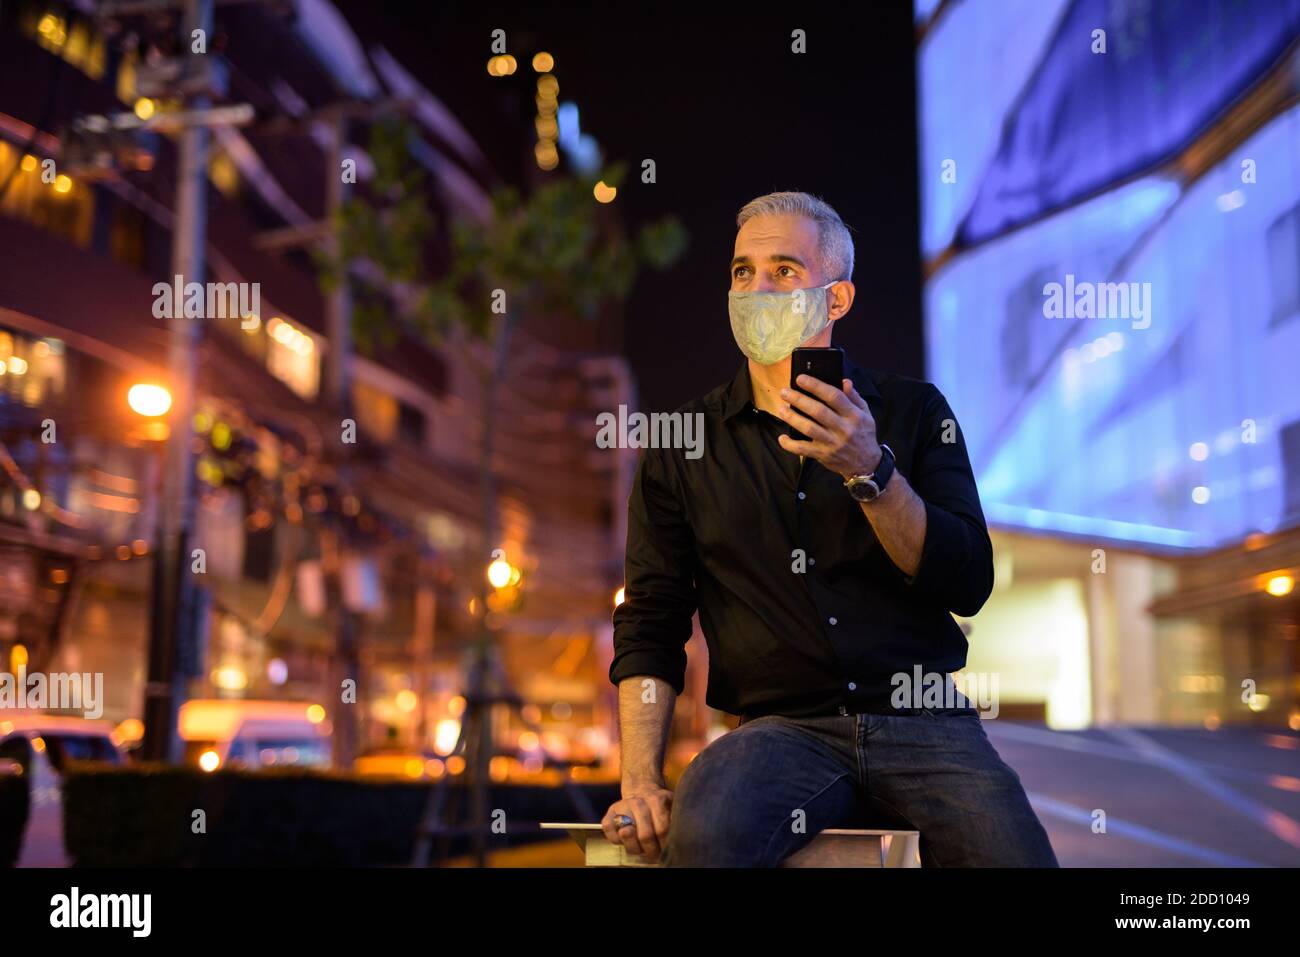 Uomo di notte per strada con maschera facciale protettiva per proteggere dal virus della corona di covid 19 mentre si usa il cellulare telefono e pensiero Foto Stock